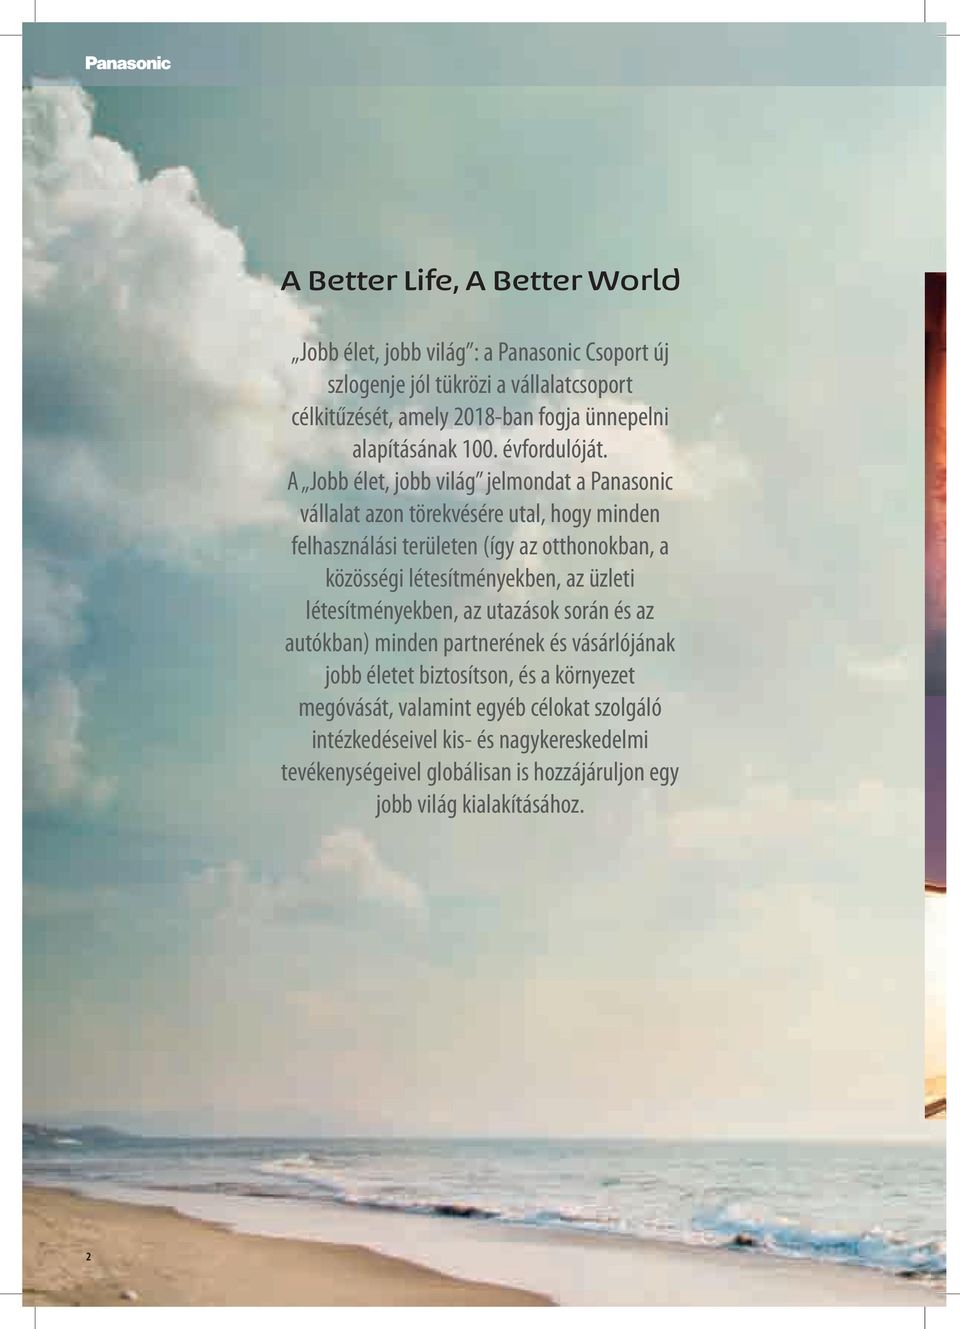 A Jobb élet, jobb világ jelmondat a Panasonic vállalat azon törekvésére utal, hogy minden felhasználási területen (így az otthonokban, a közösségi